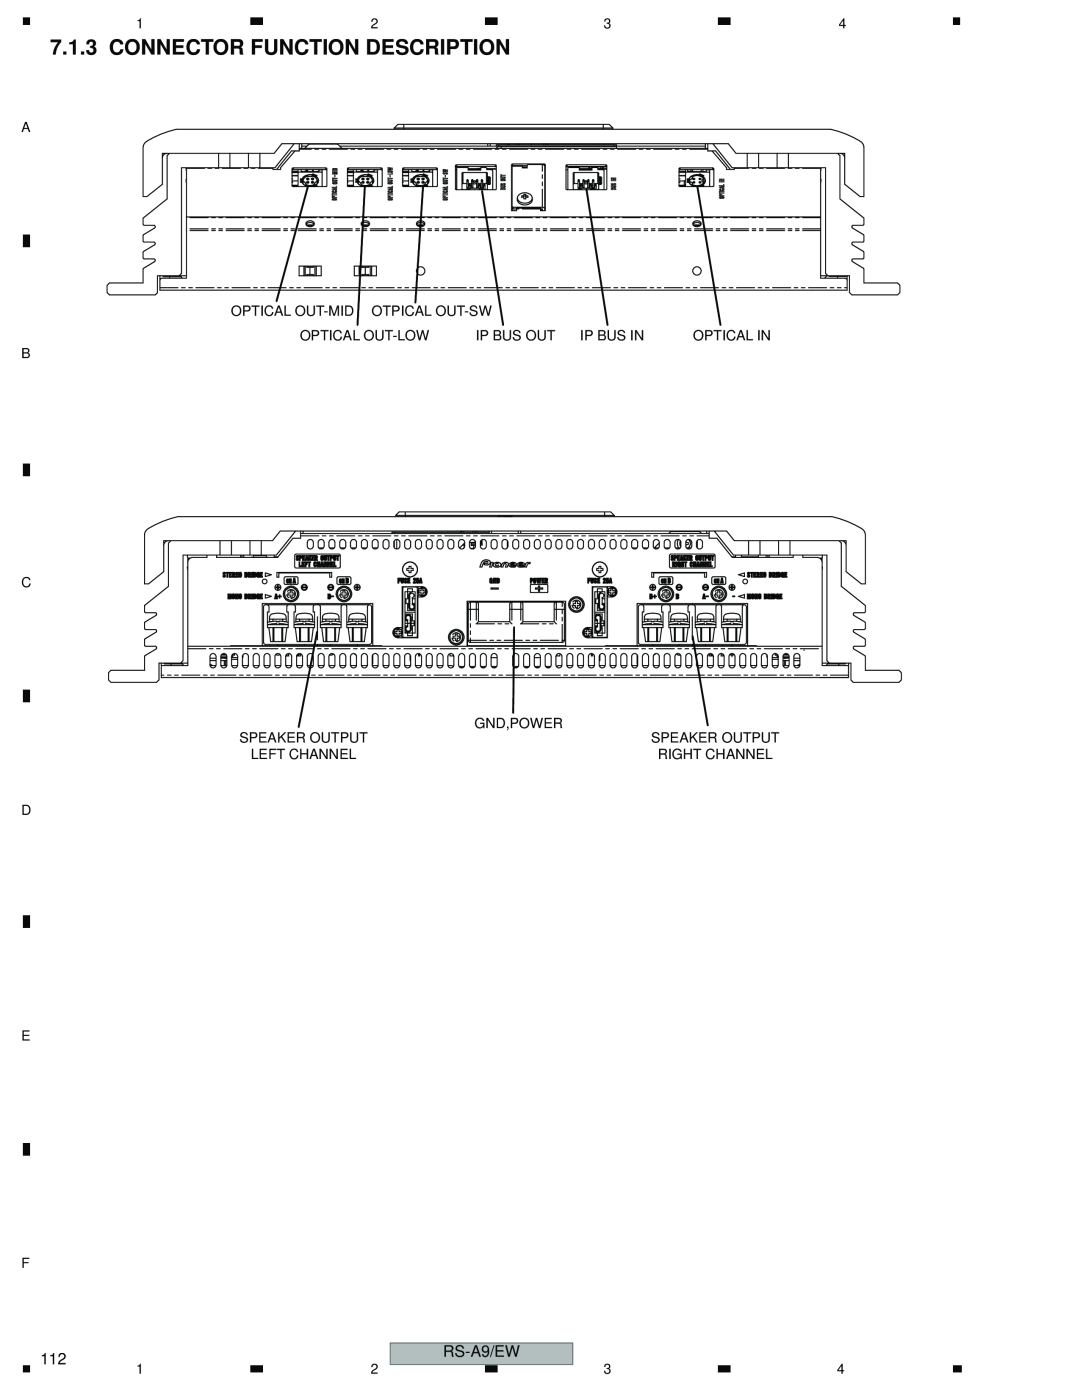 Pioneer RS-A9/EW manual Connector Function Description 